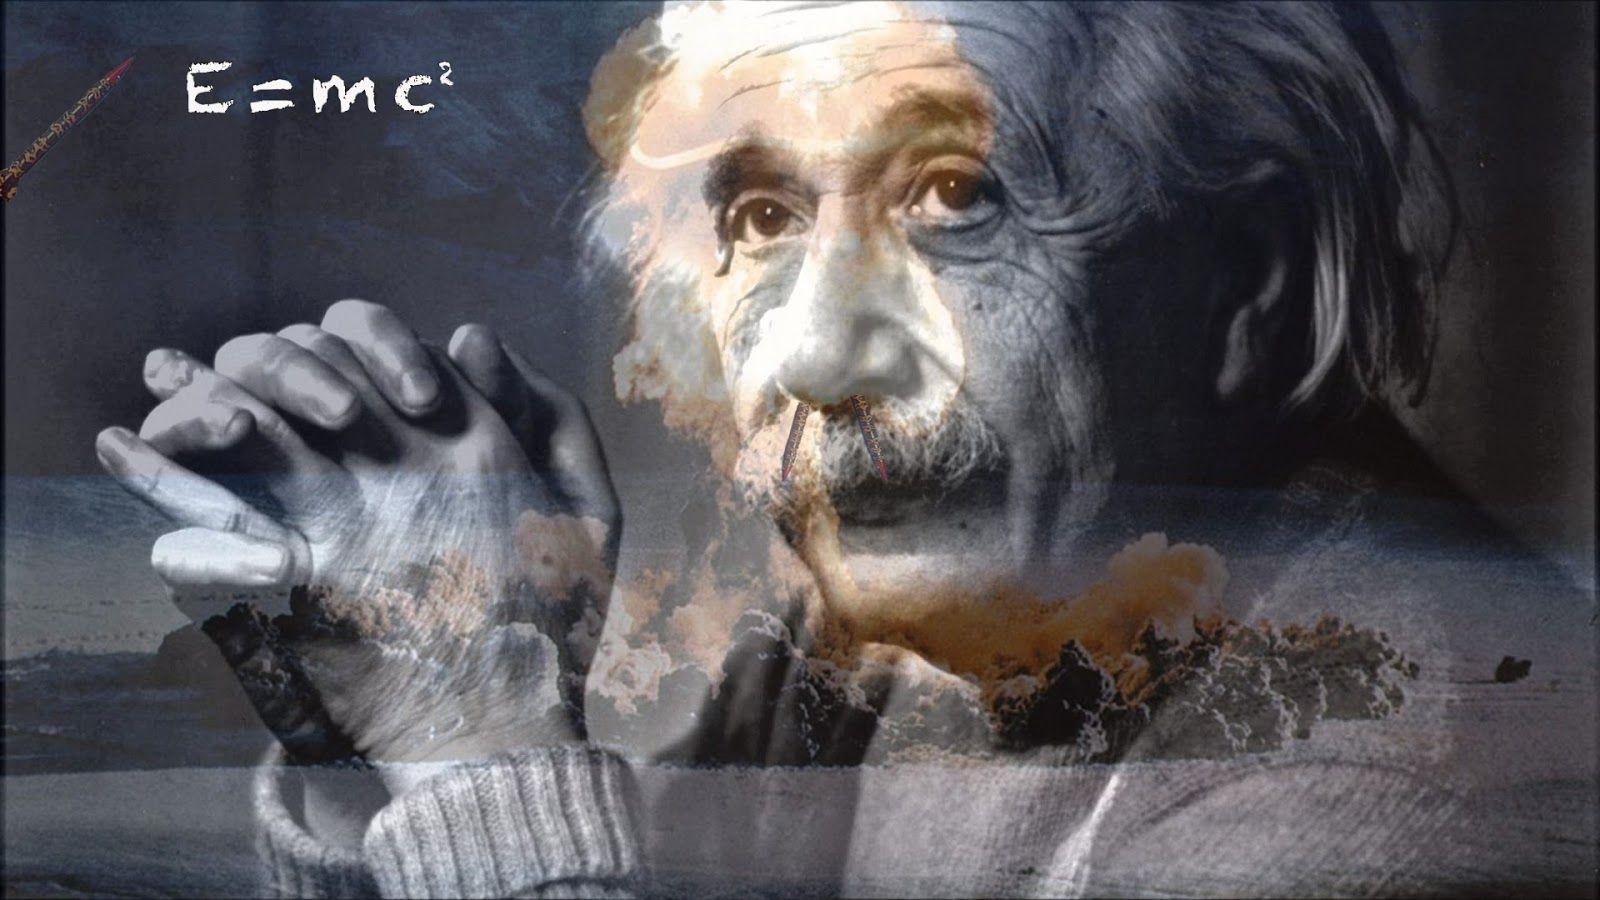 تصویری حیرت انگیز  از اسطوره علم فلسفه دنیا آلبرت انیشتین